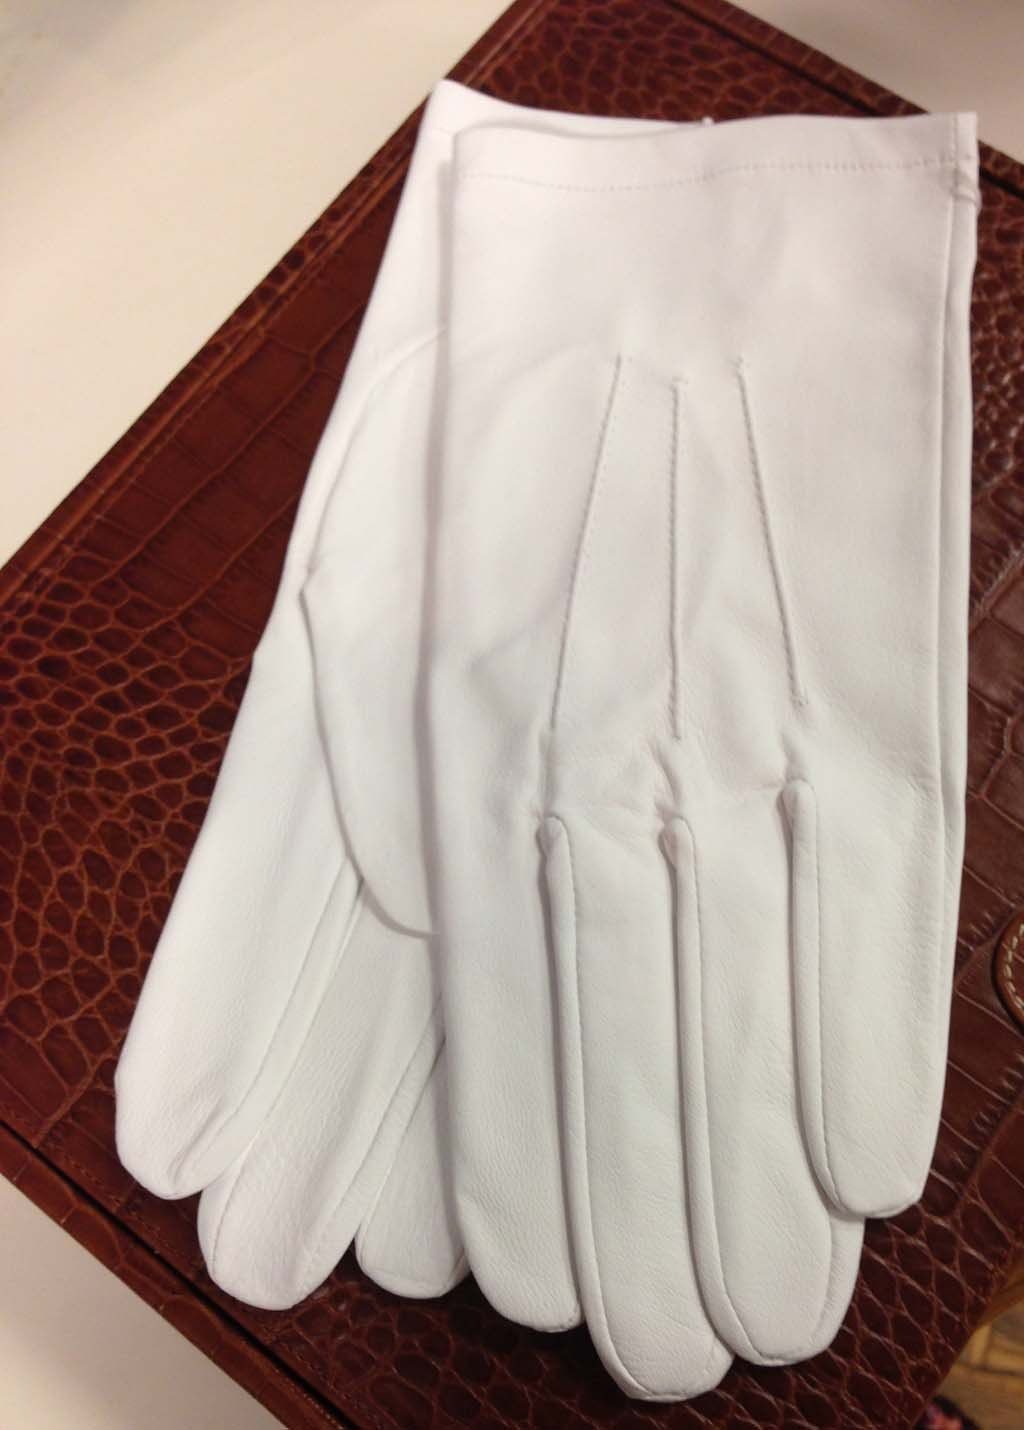 white cotton opera gloves